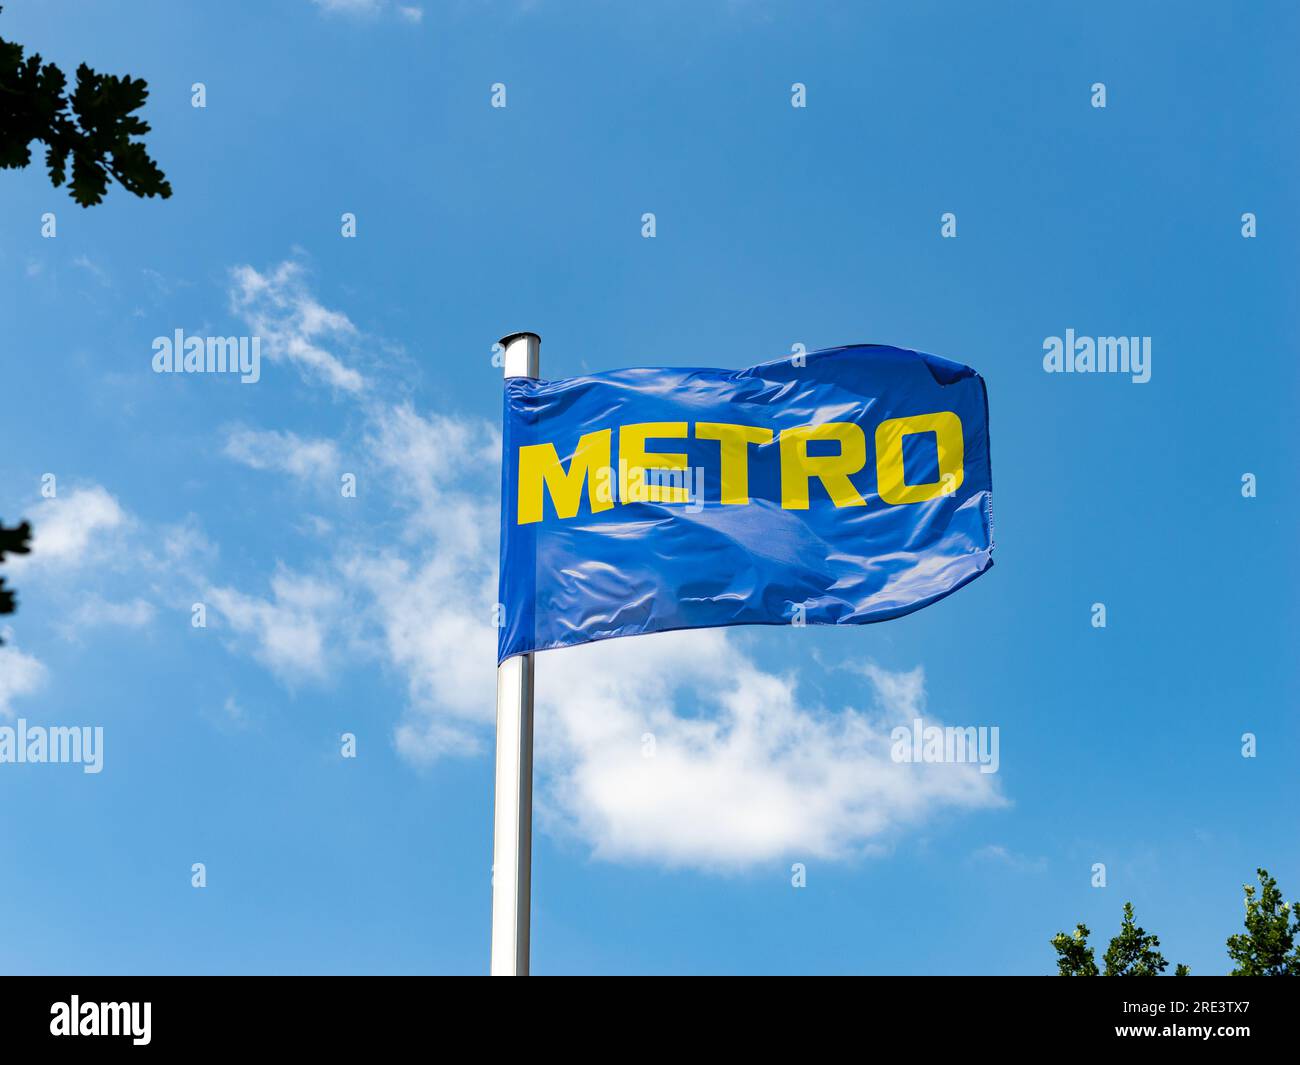 Logo della compagnia metro grossista su una bandiera in alto nell'aria. Il negozio Cash and Carry offre prodotti ai membri dell'azienda in un contesto b2b. Foto Stock